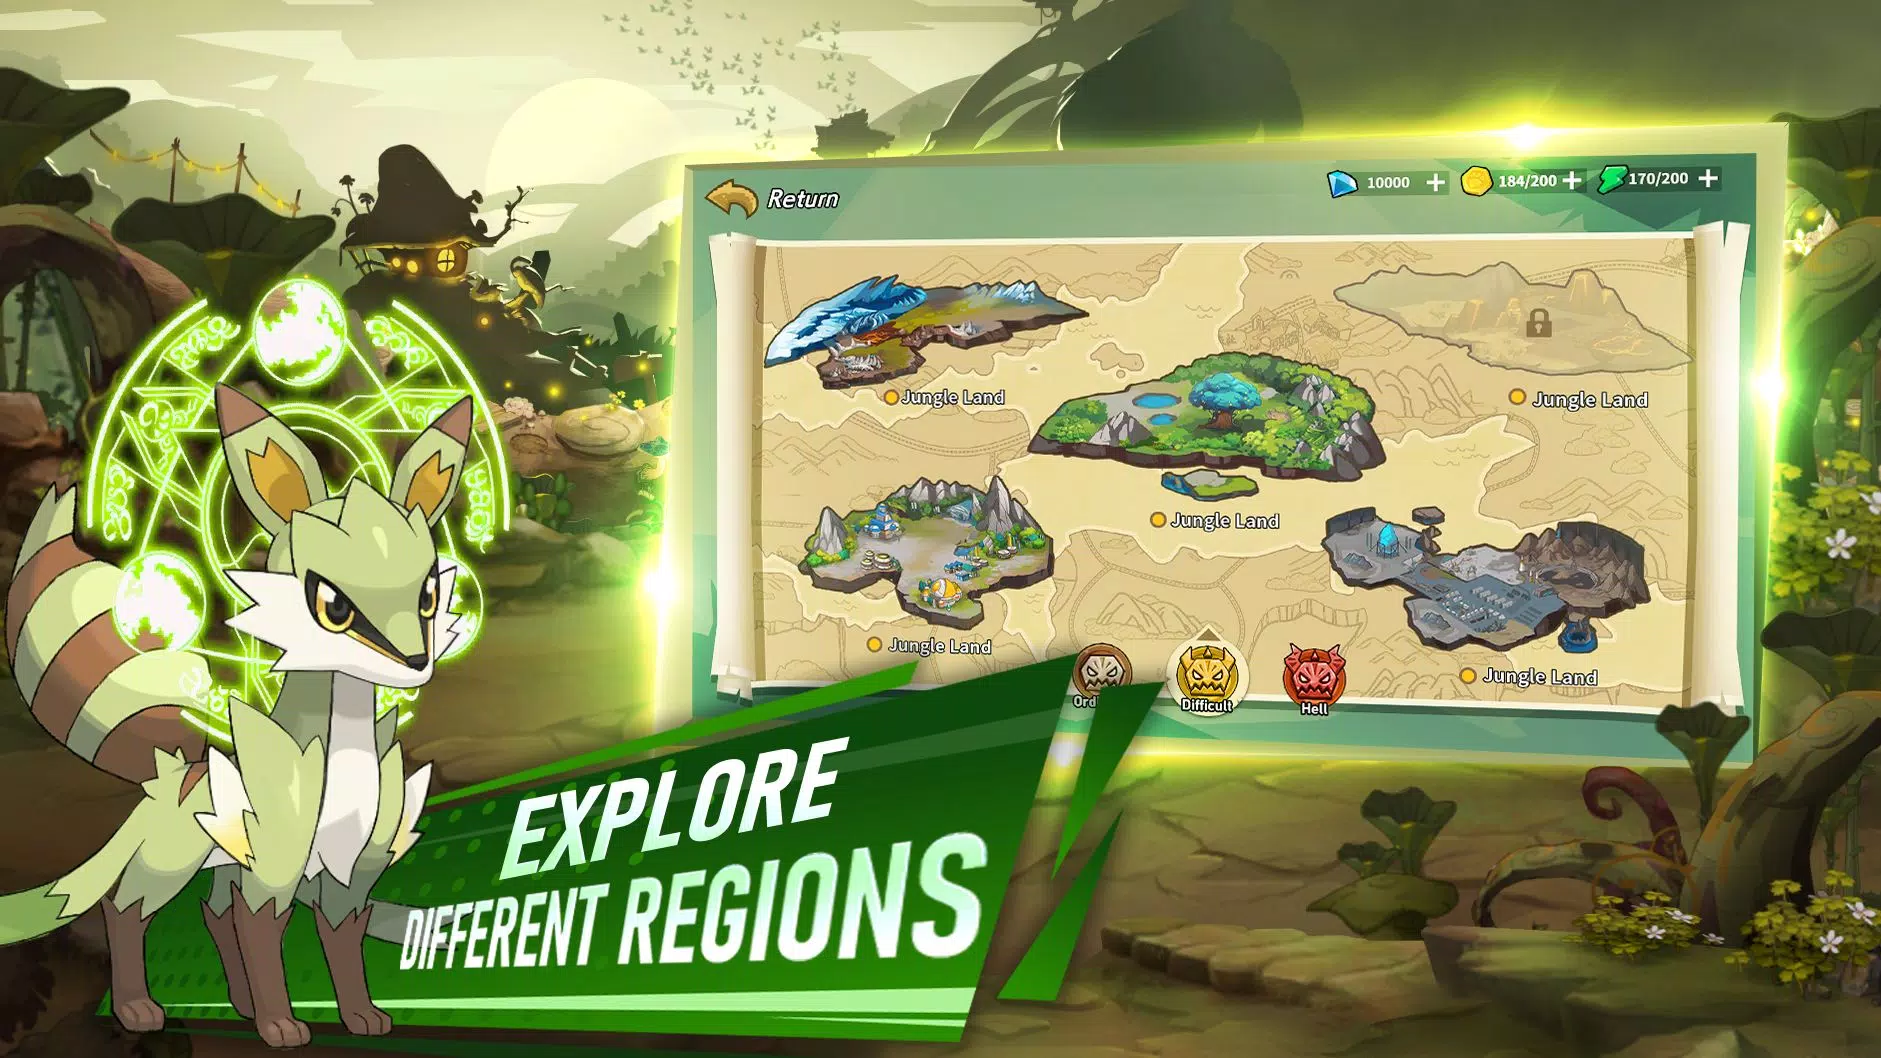 Pokémon Infinity Island - New Pokémon Game for Mobile! - Pokeland Legends